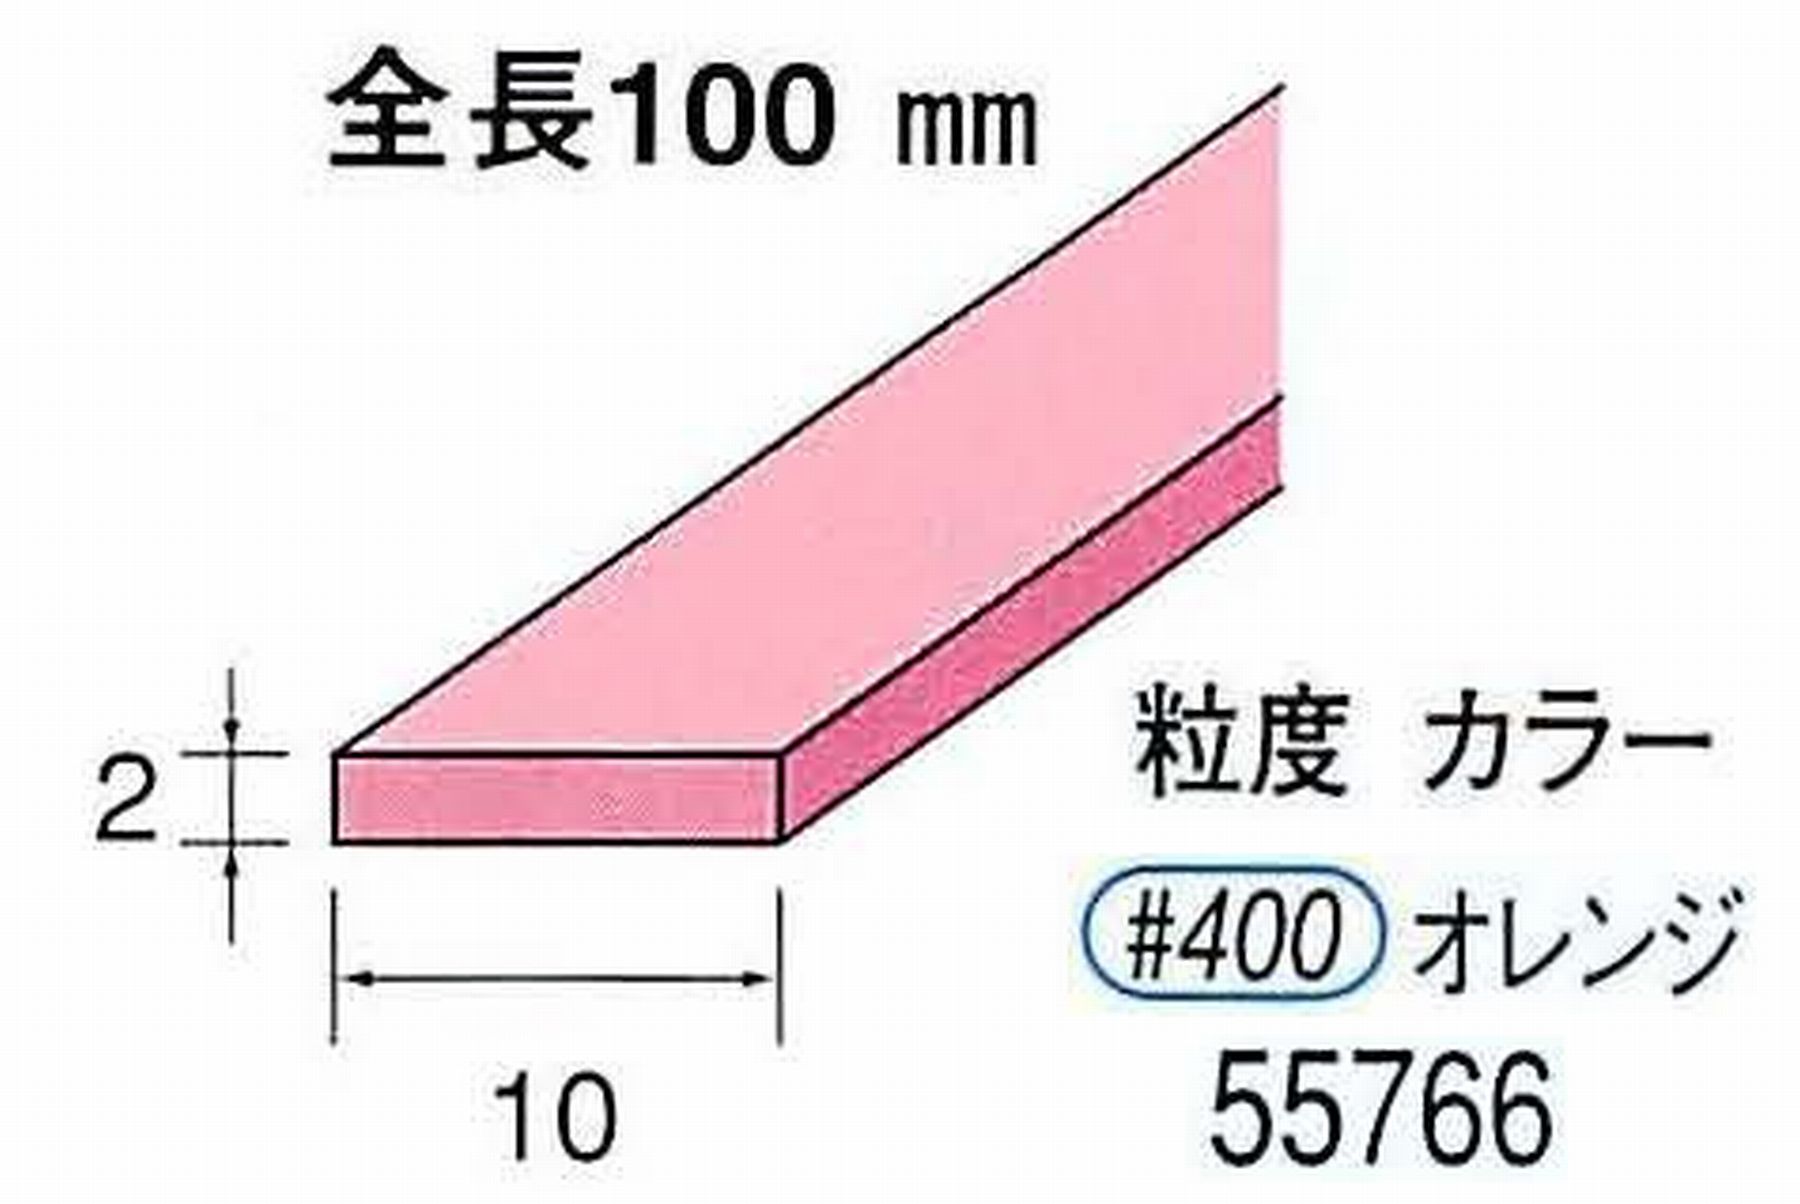 ナカニシ/NAKANISHI セラファイバー砥石 全長100mm オレンジ 55766